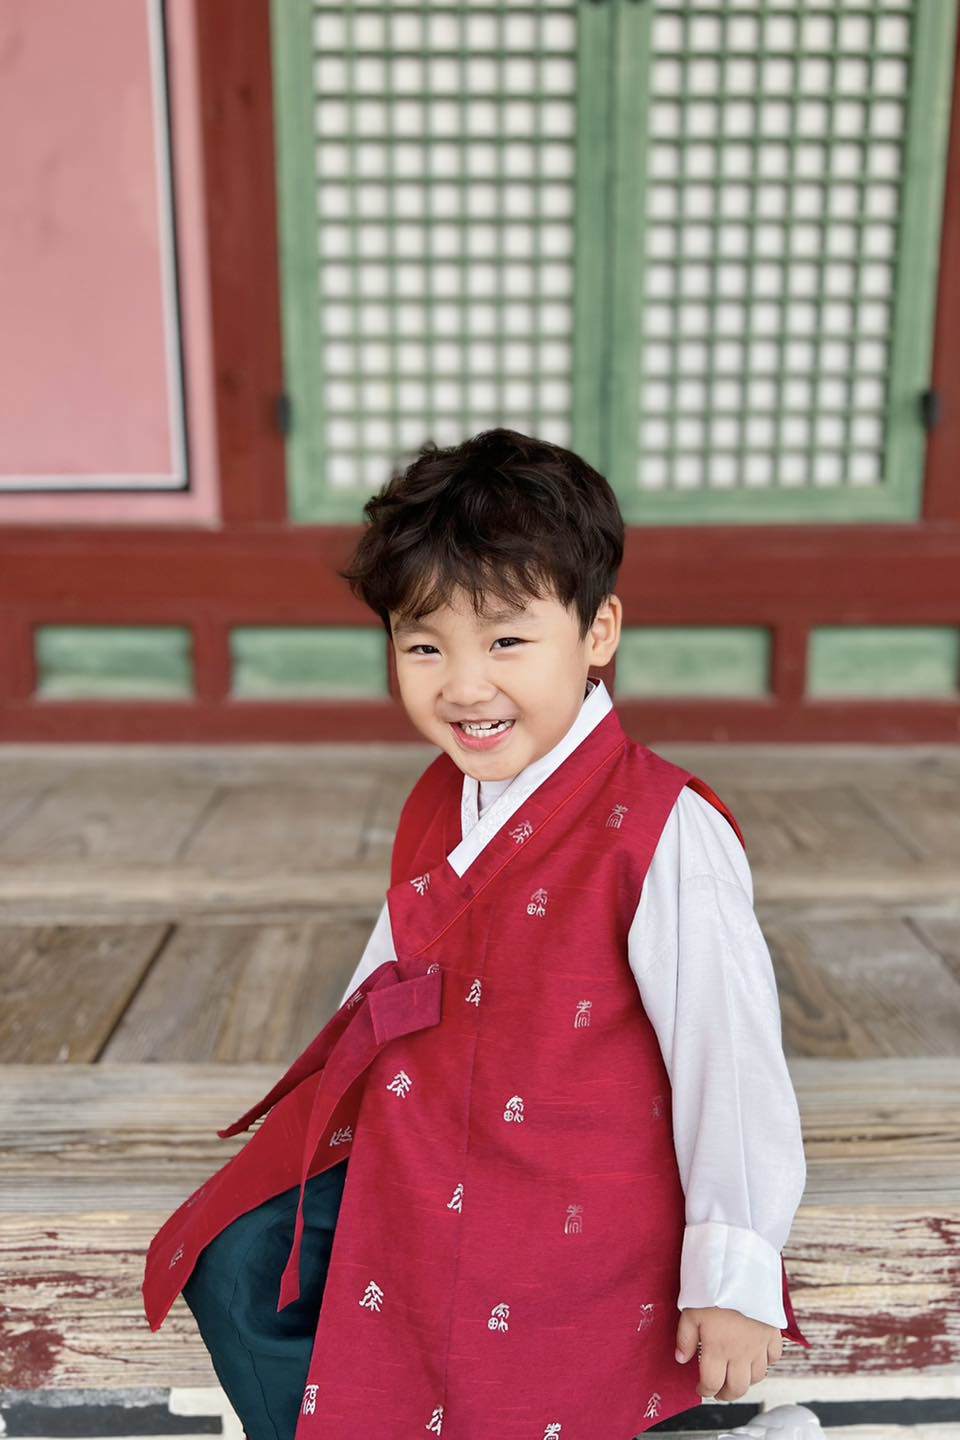 Con trai Hoà Minzy diện 2 bộ Hanbok: 1 bộ màu xanh ngọc và 1 bộ màu đỏ